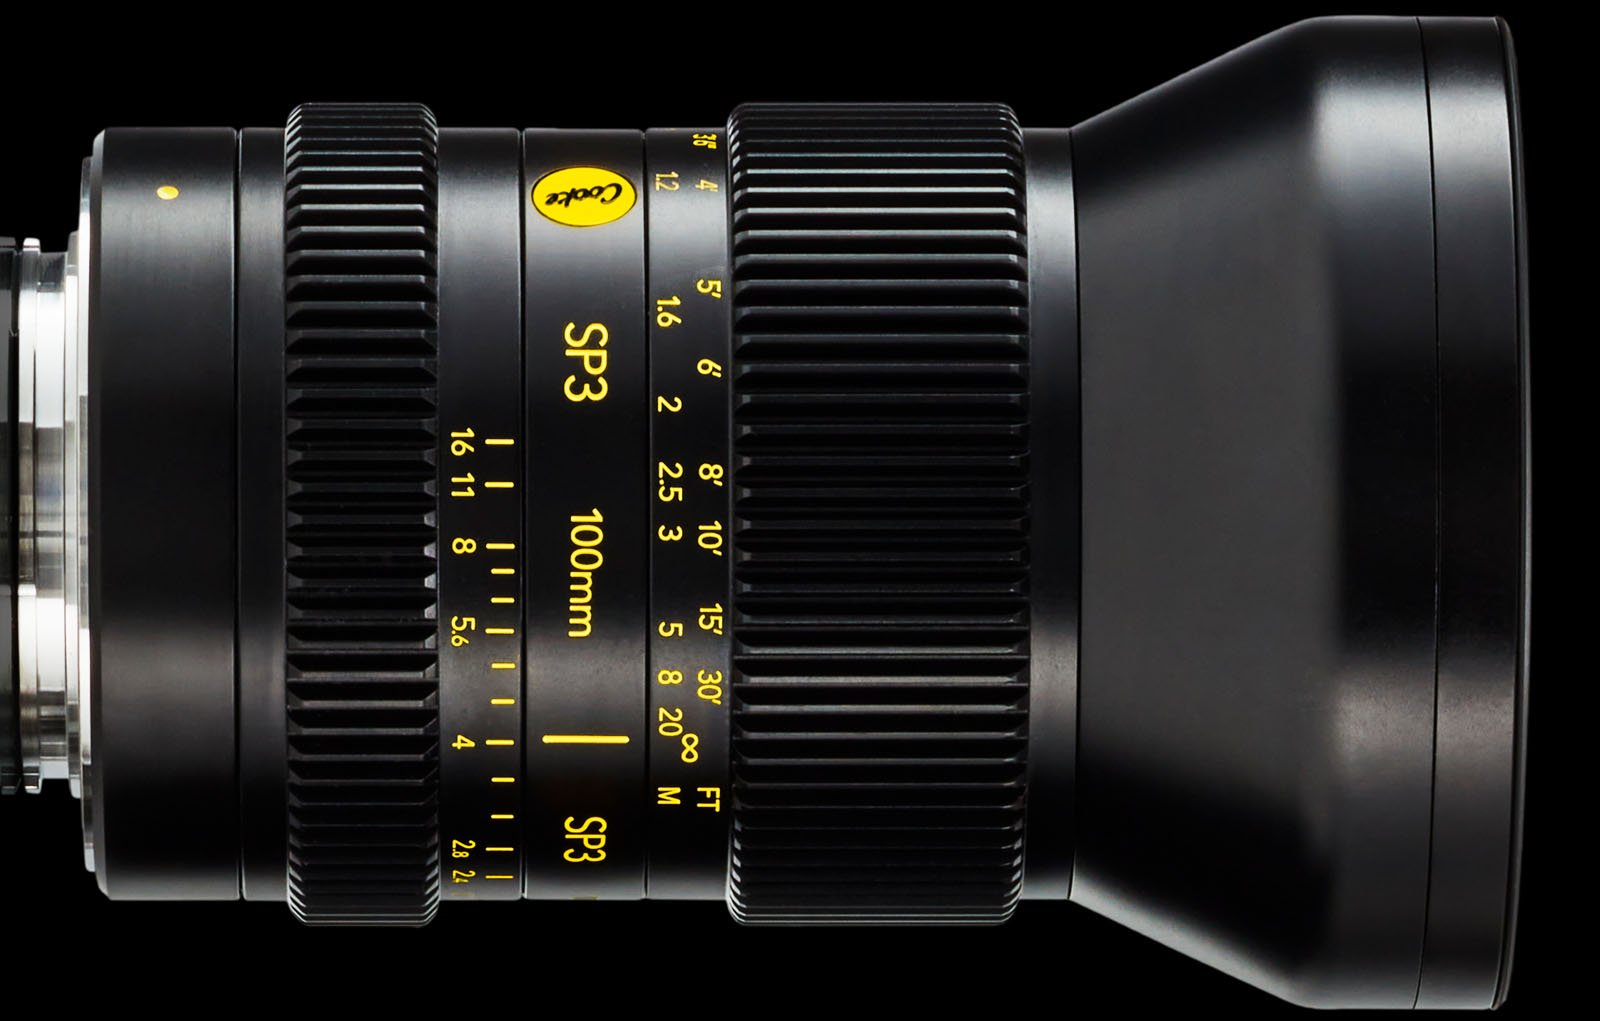 Cooke Optics SP3 cinema lenses for full-frame mirrorless cameras